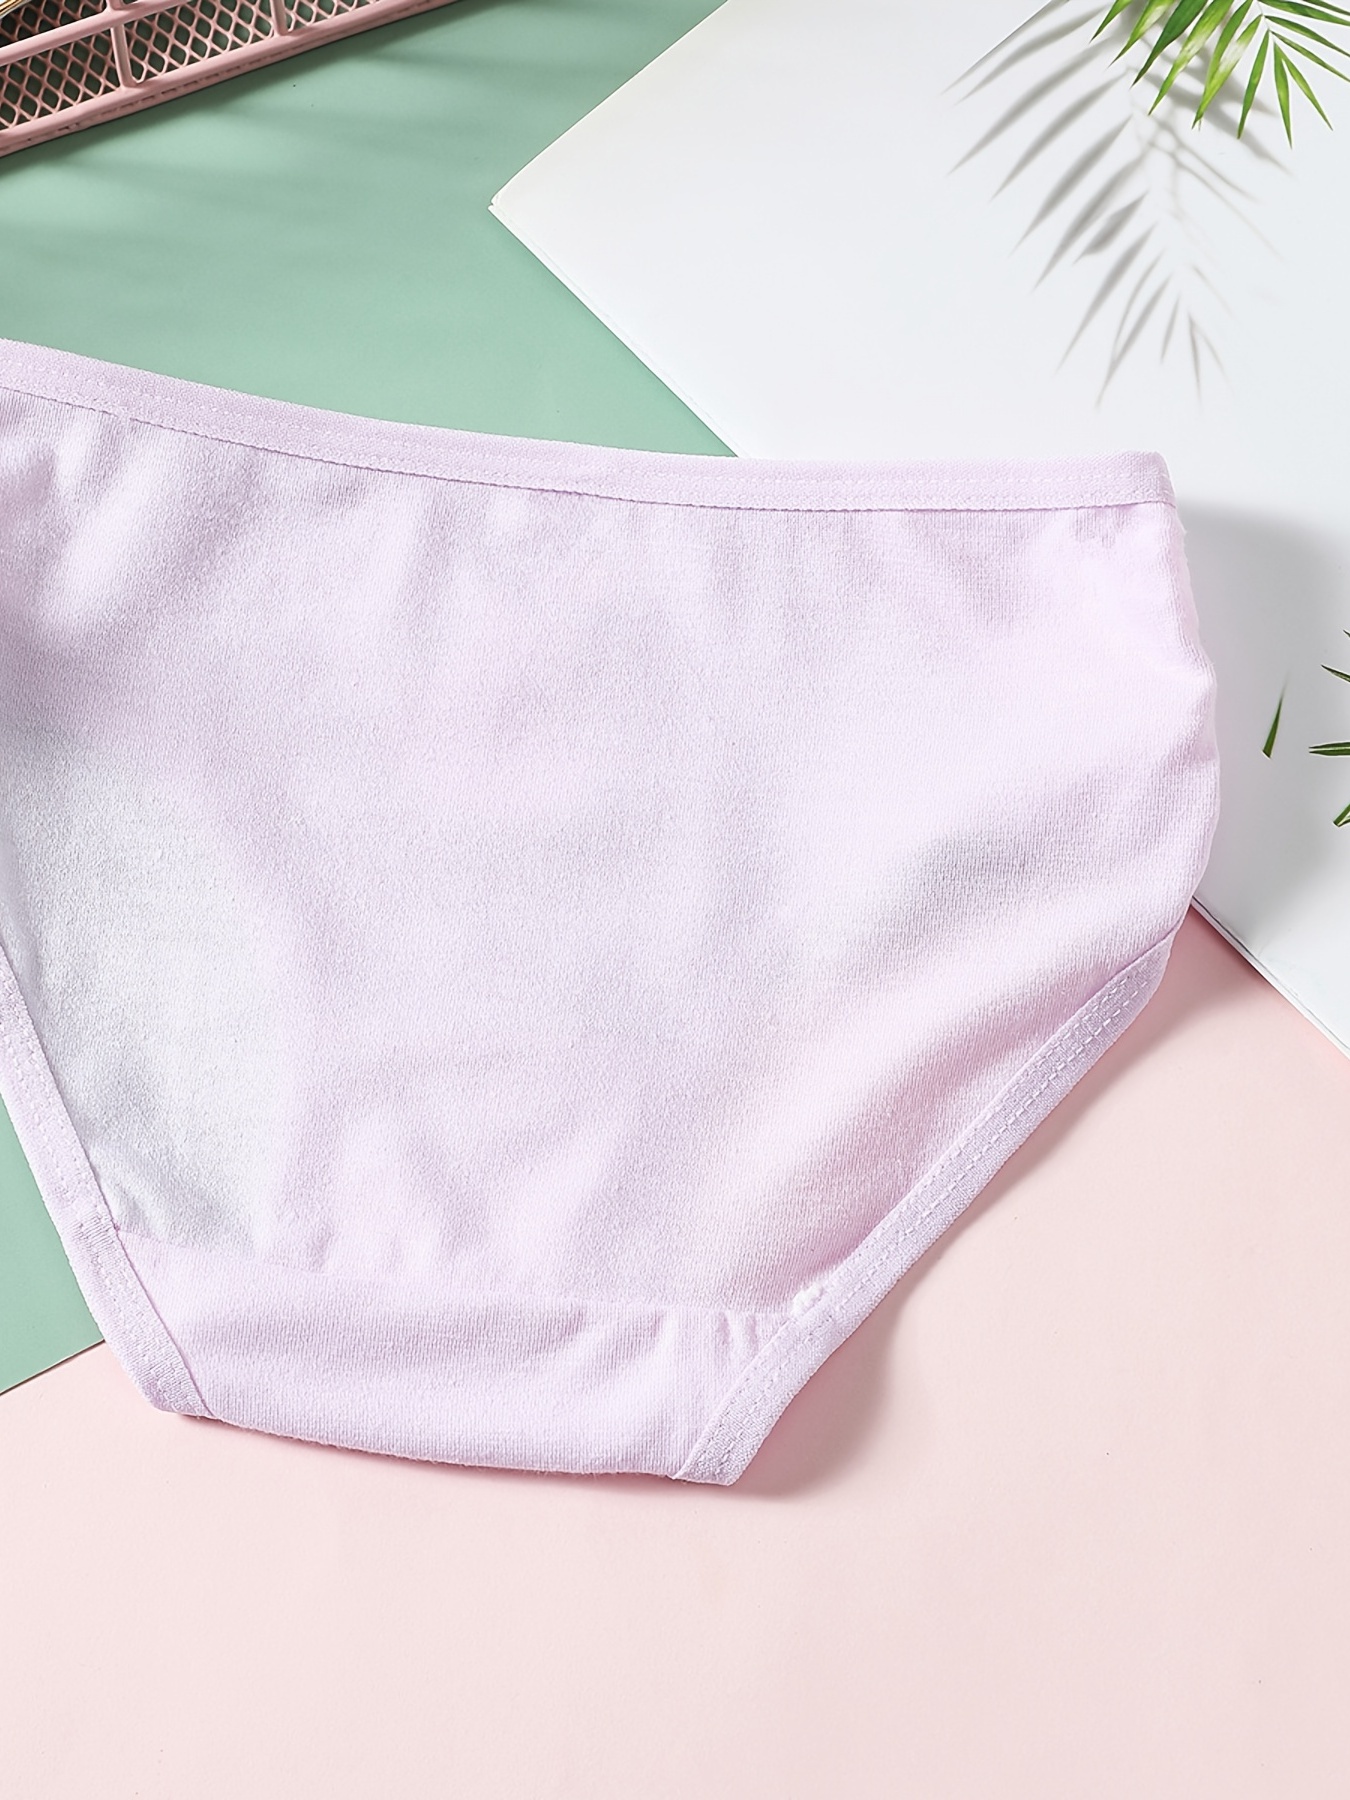 Fashion Young Girls Underwear Women Panties Cute Cat Print